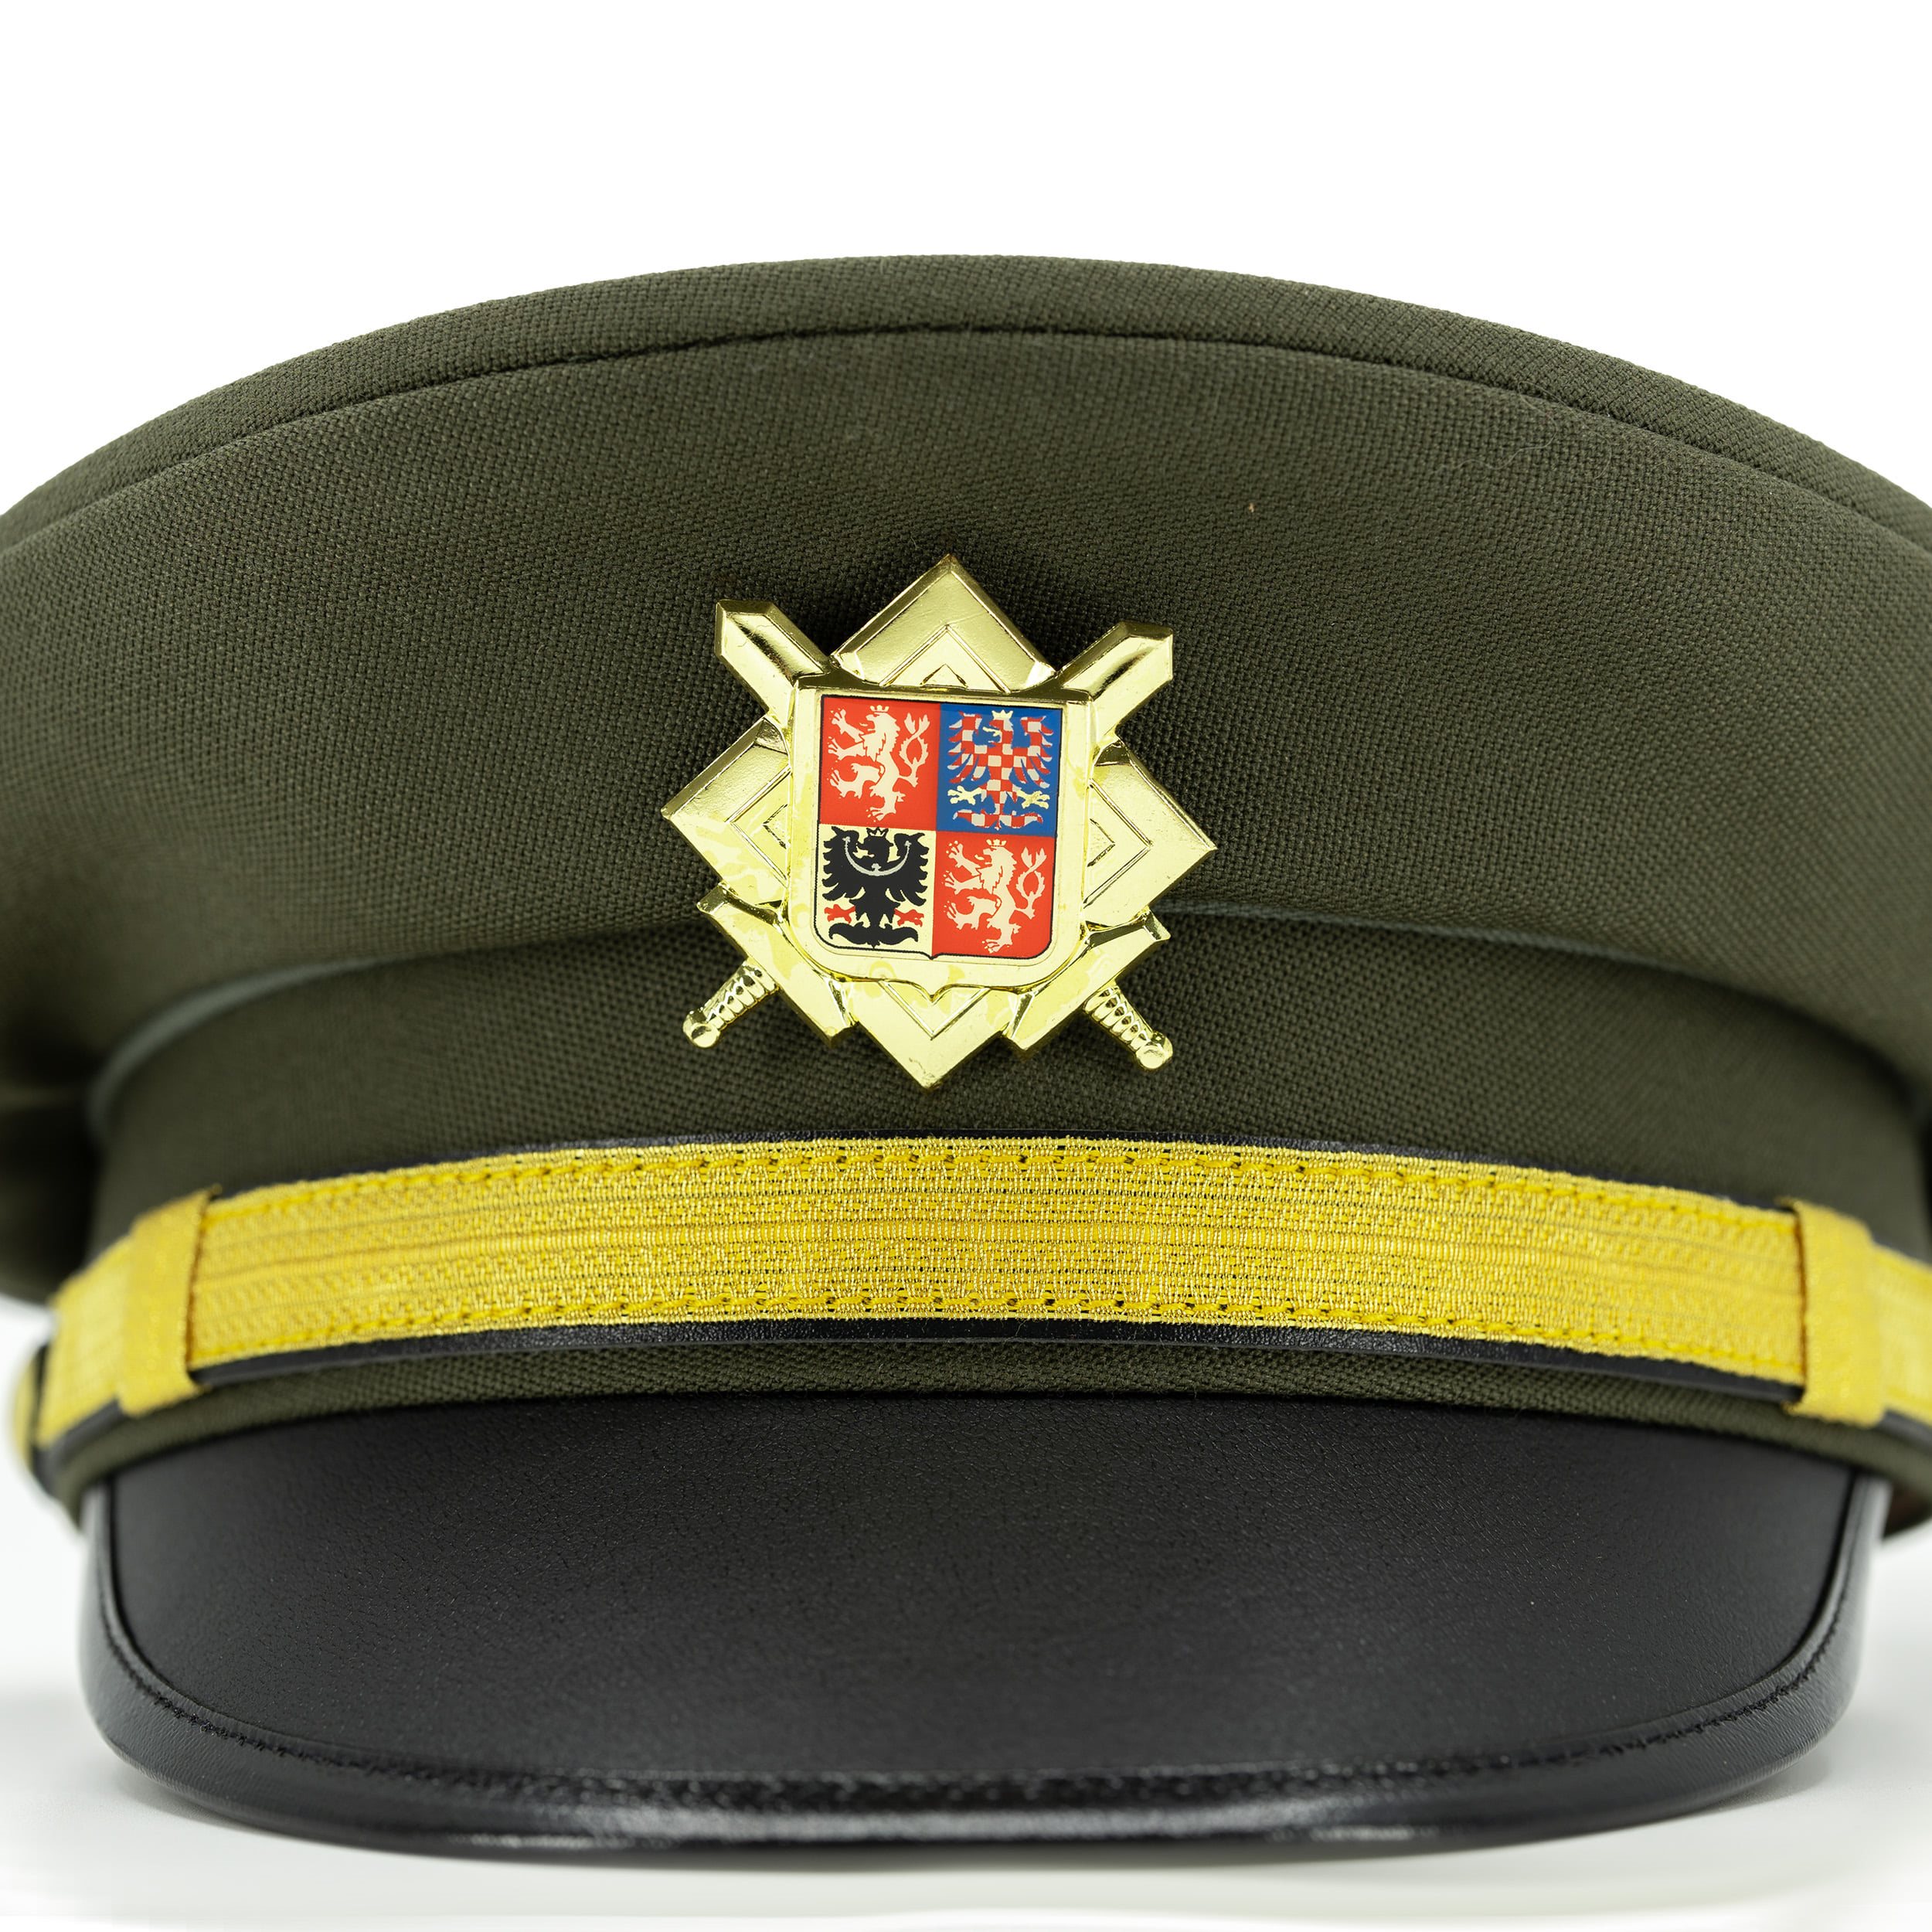 Čepice / Brigadýrka ČS se zlatým odznakem ZELENÁ Armáda ČR 816019 L-11